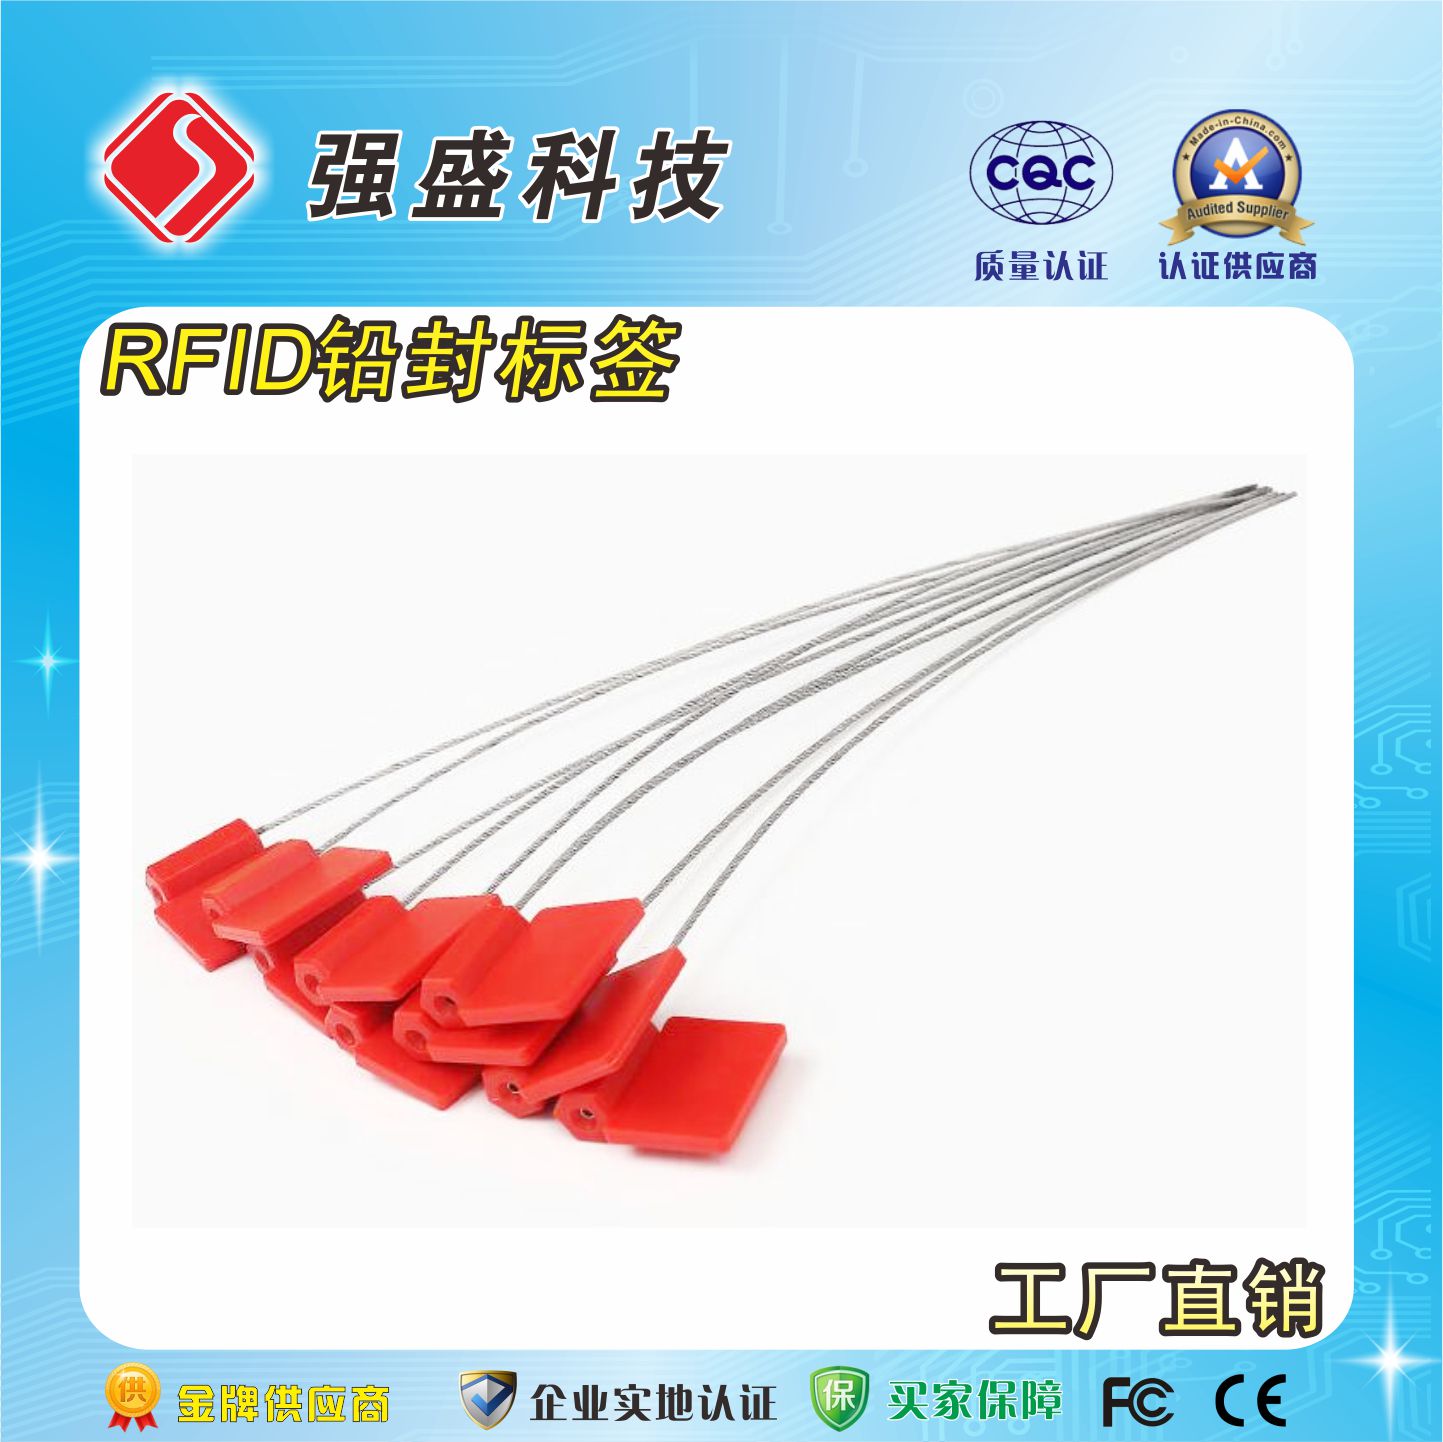 厂家供应铅封标签 铅封RFID电子标签价格 高频钢丝绳铅封制作成本1